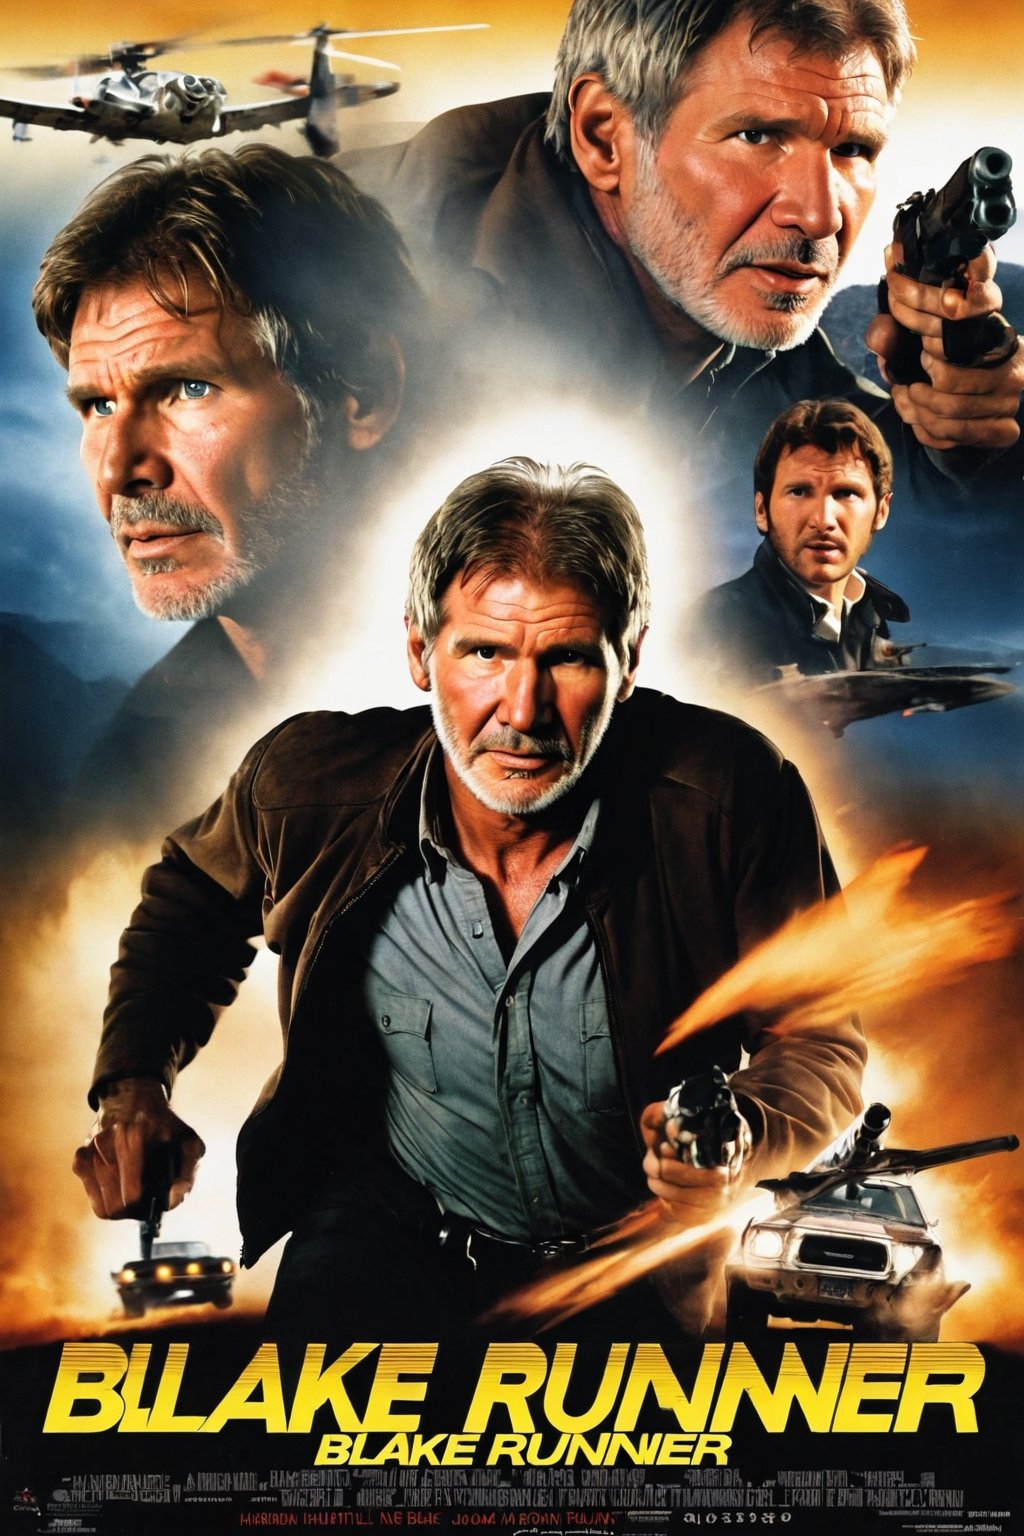 Movie poster of "Blake Runner" starring Harrison Ford. Movie poster page "Blake runner"